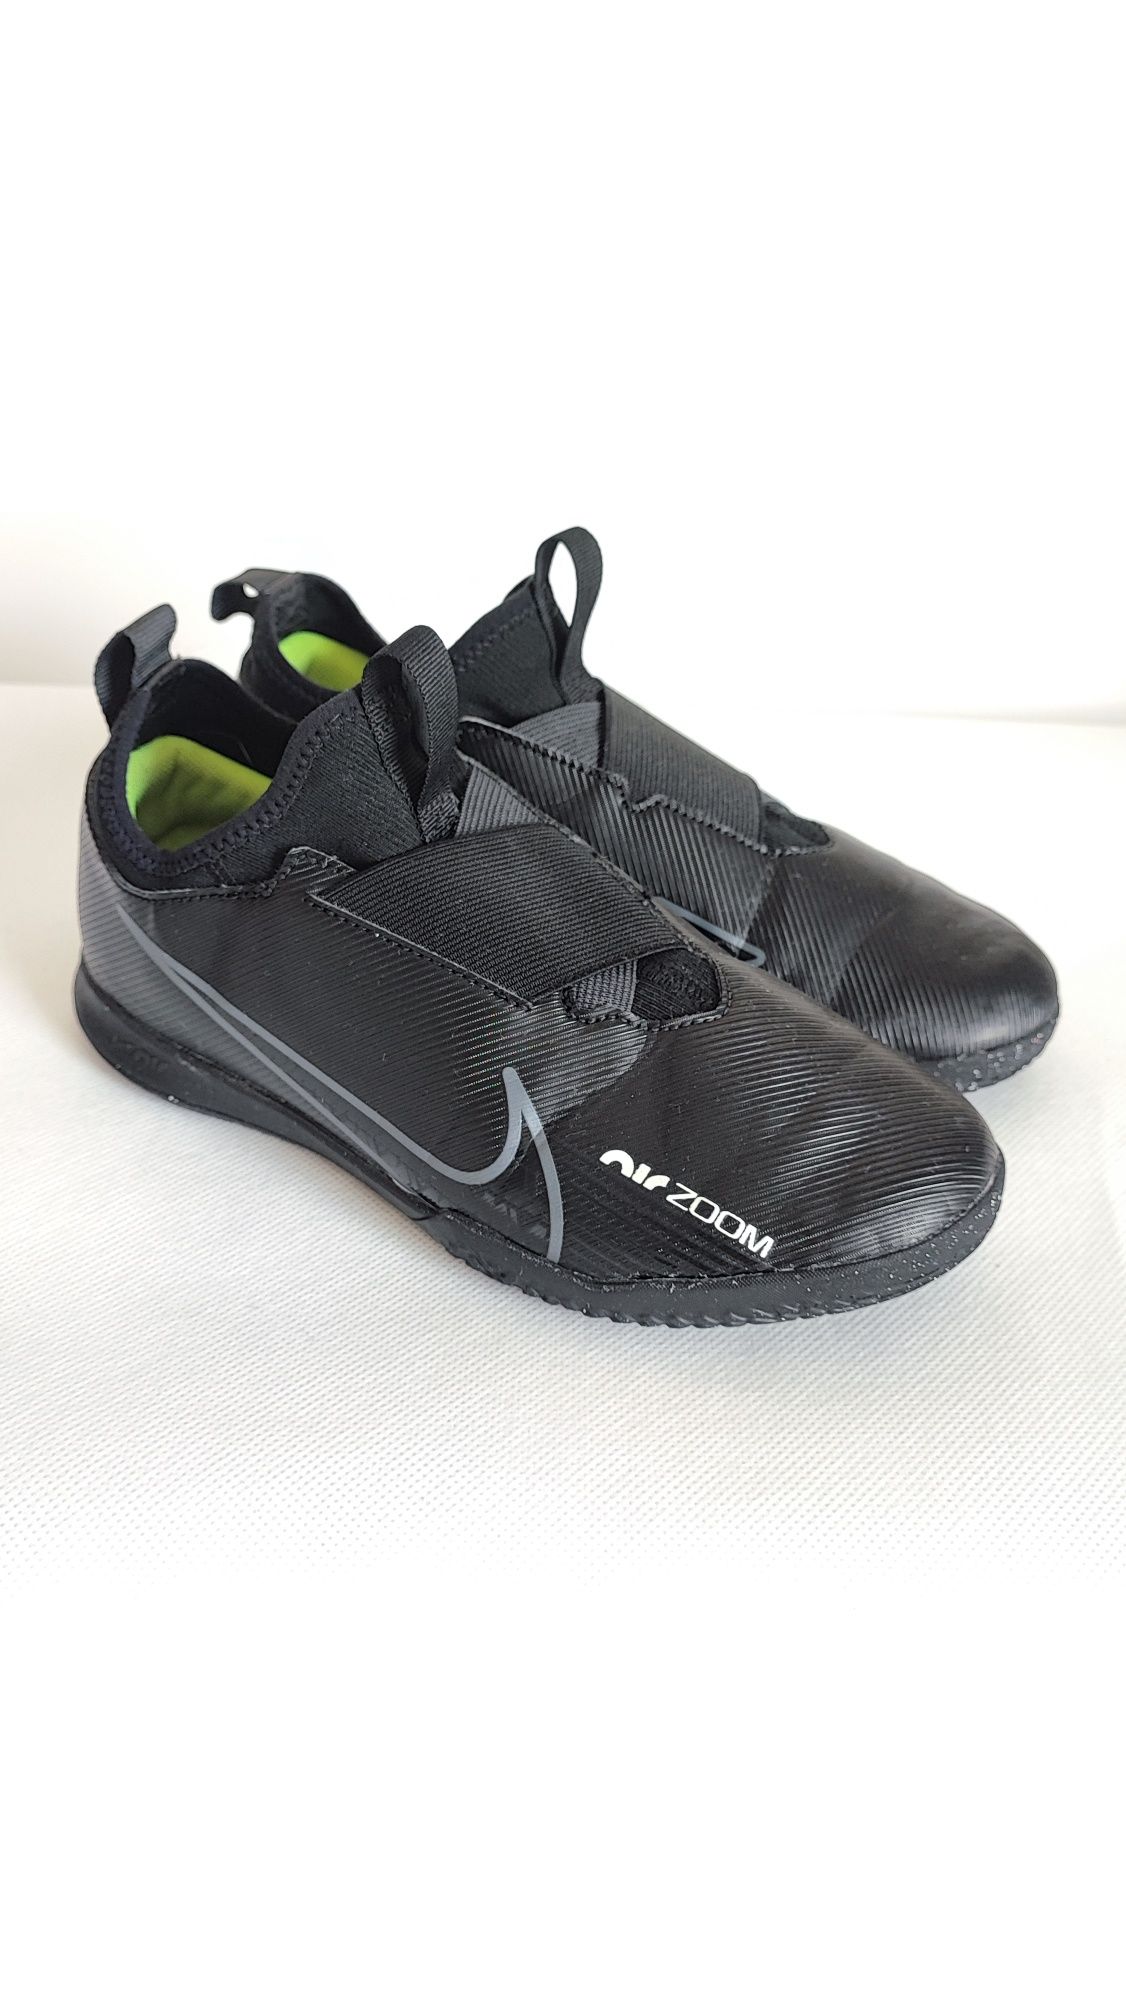 Buty sportowe halówki na halę Nike Mercurial rozmiar 38 wkładka 24 cm